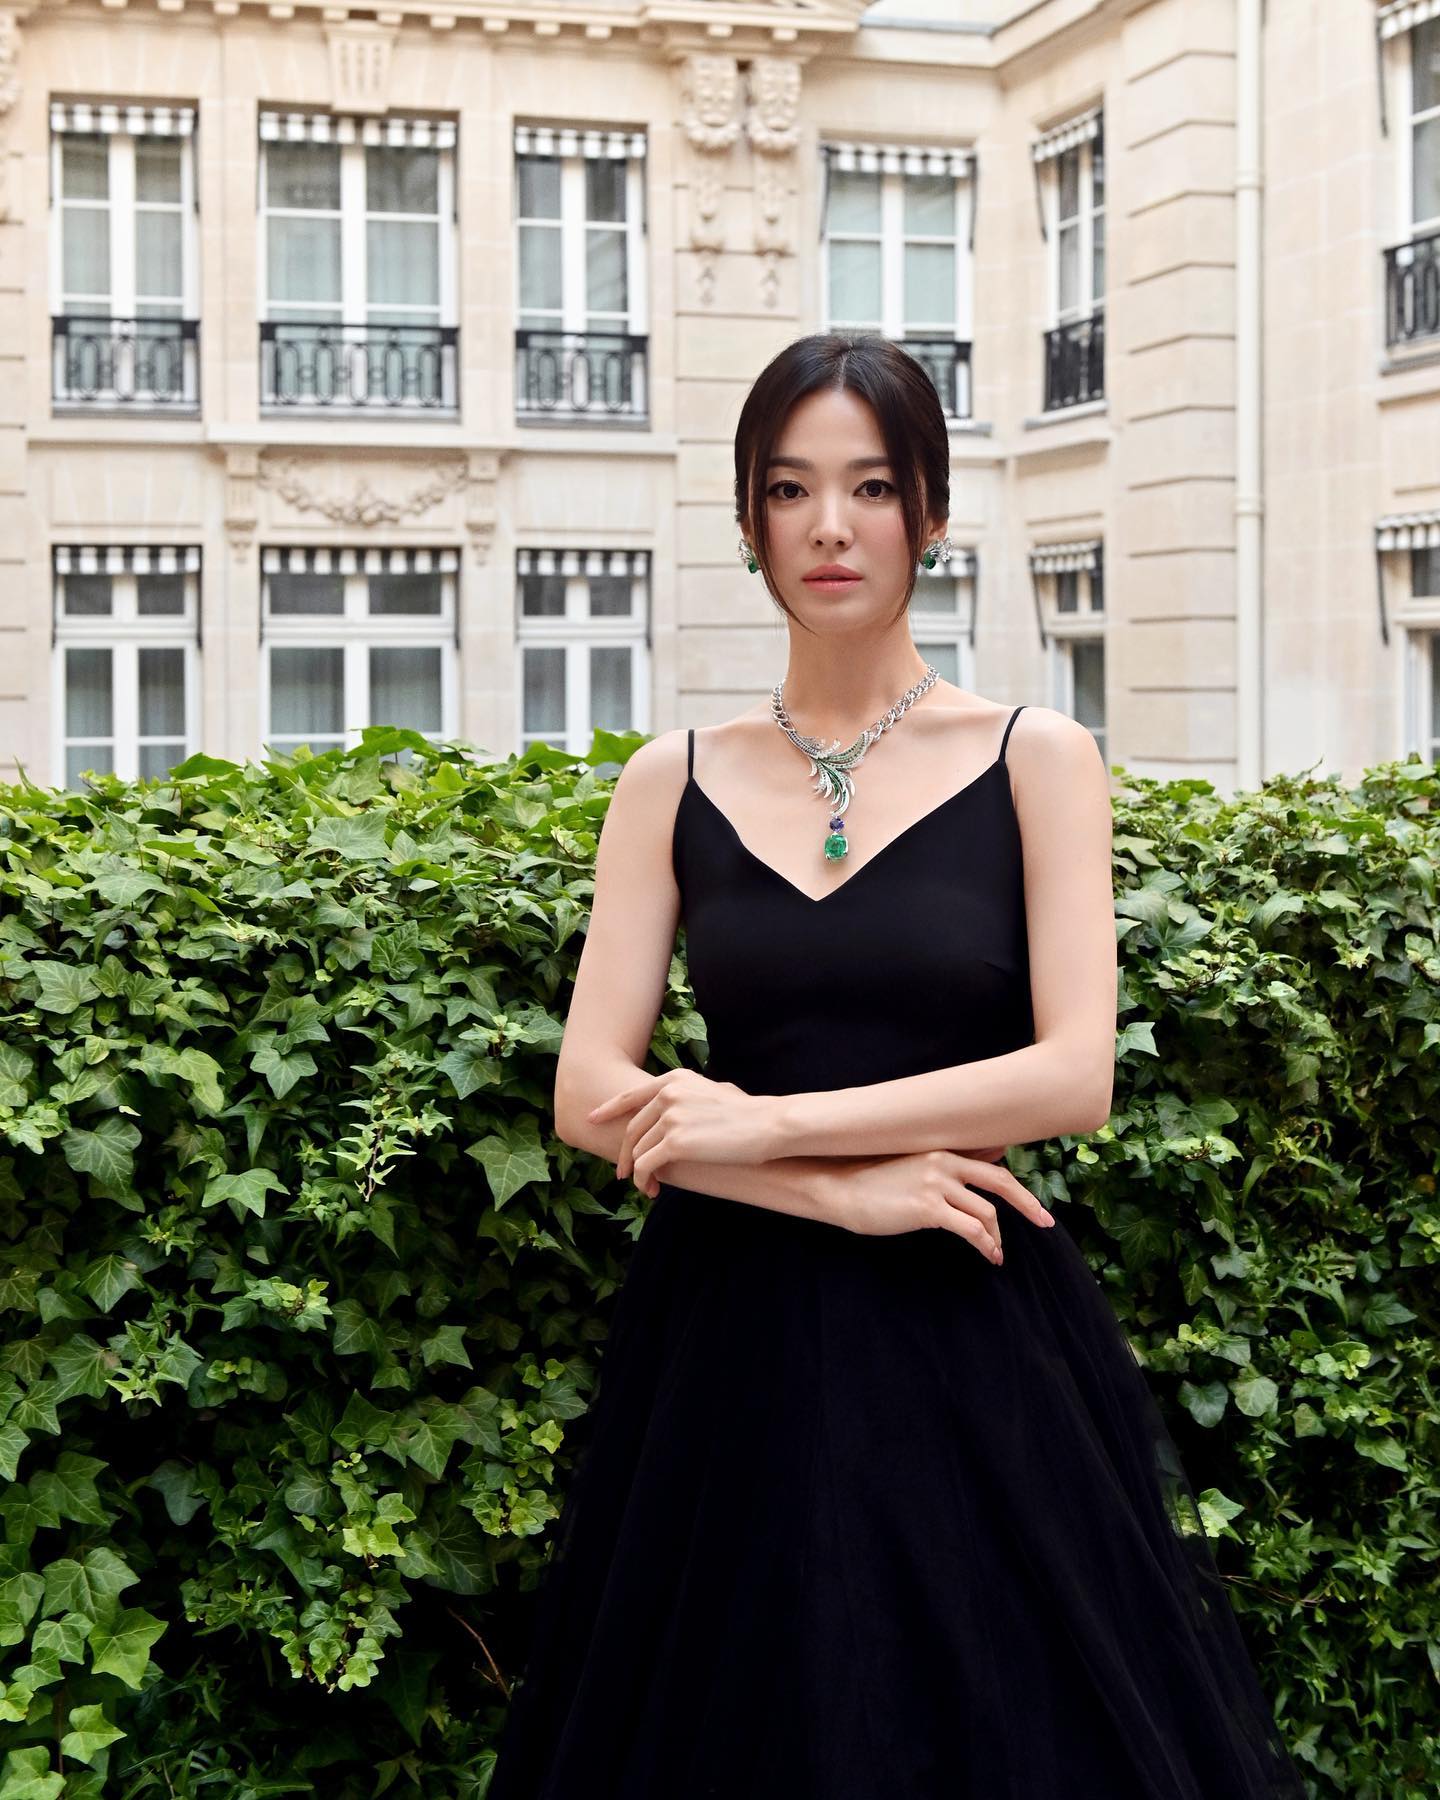 Phong cách thời trang vạn người mê của Song Hye Kyo - Tạp chí Đẹp